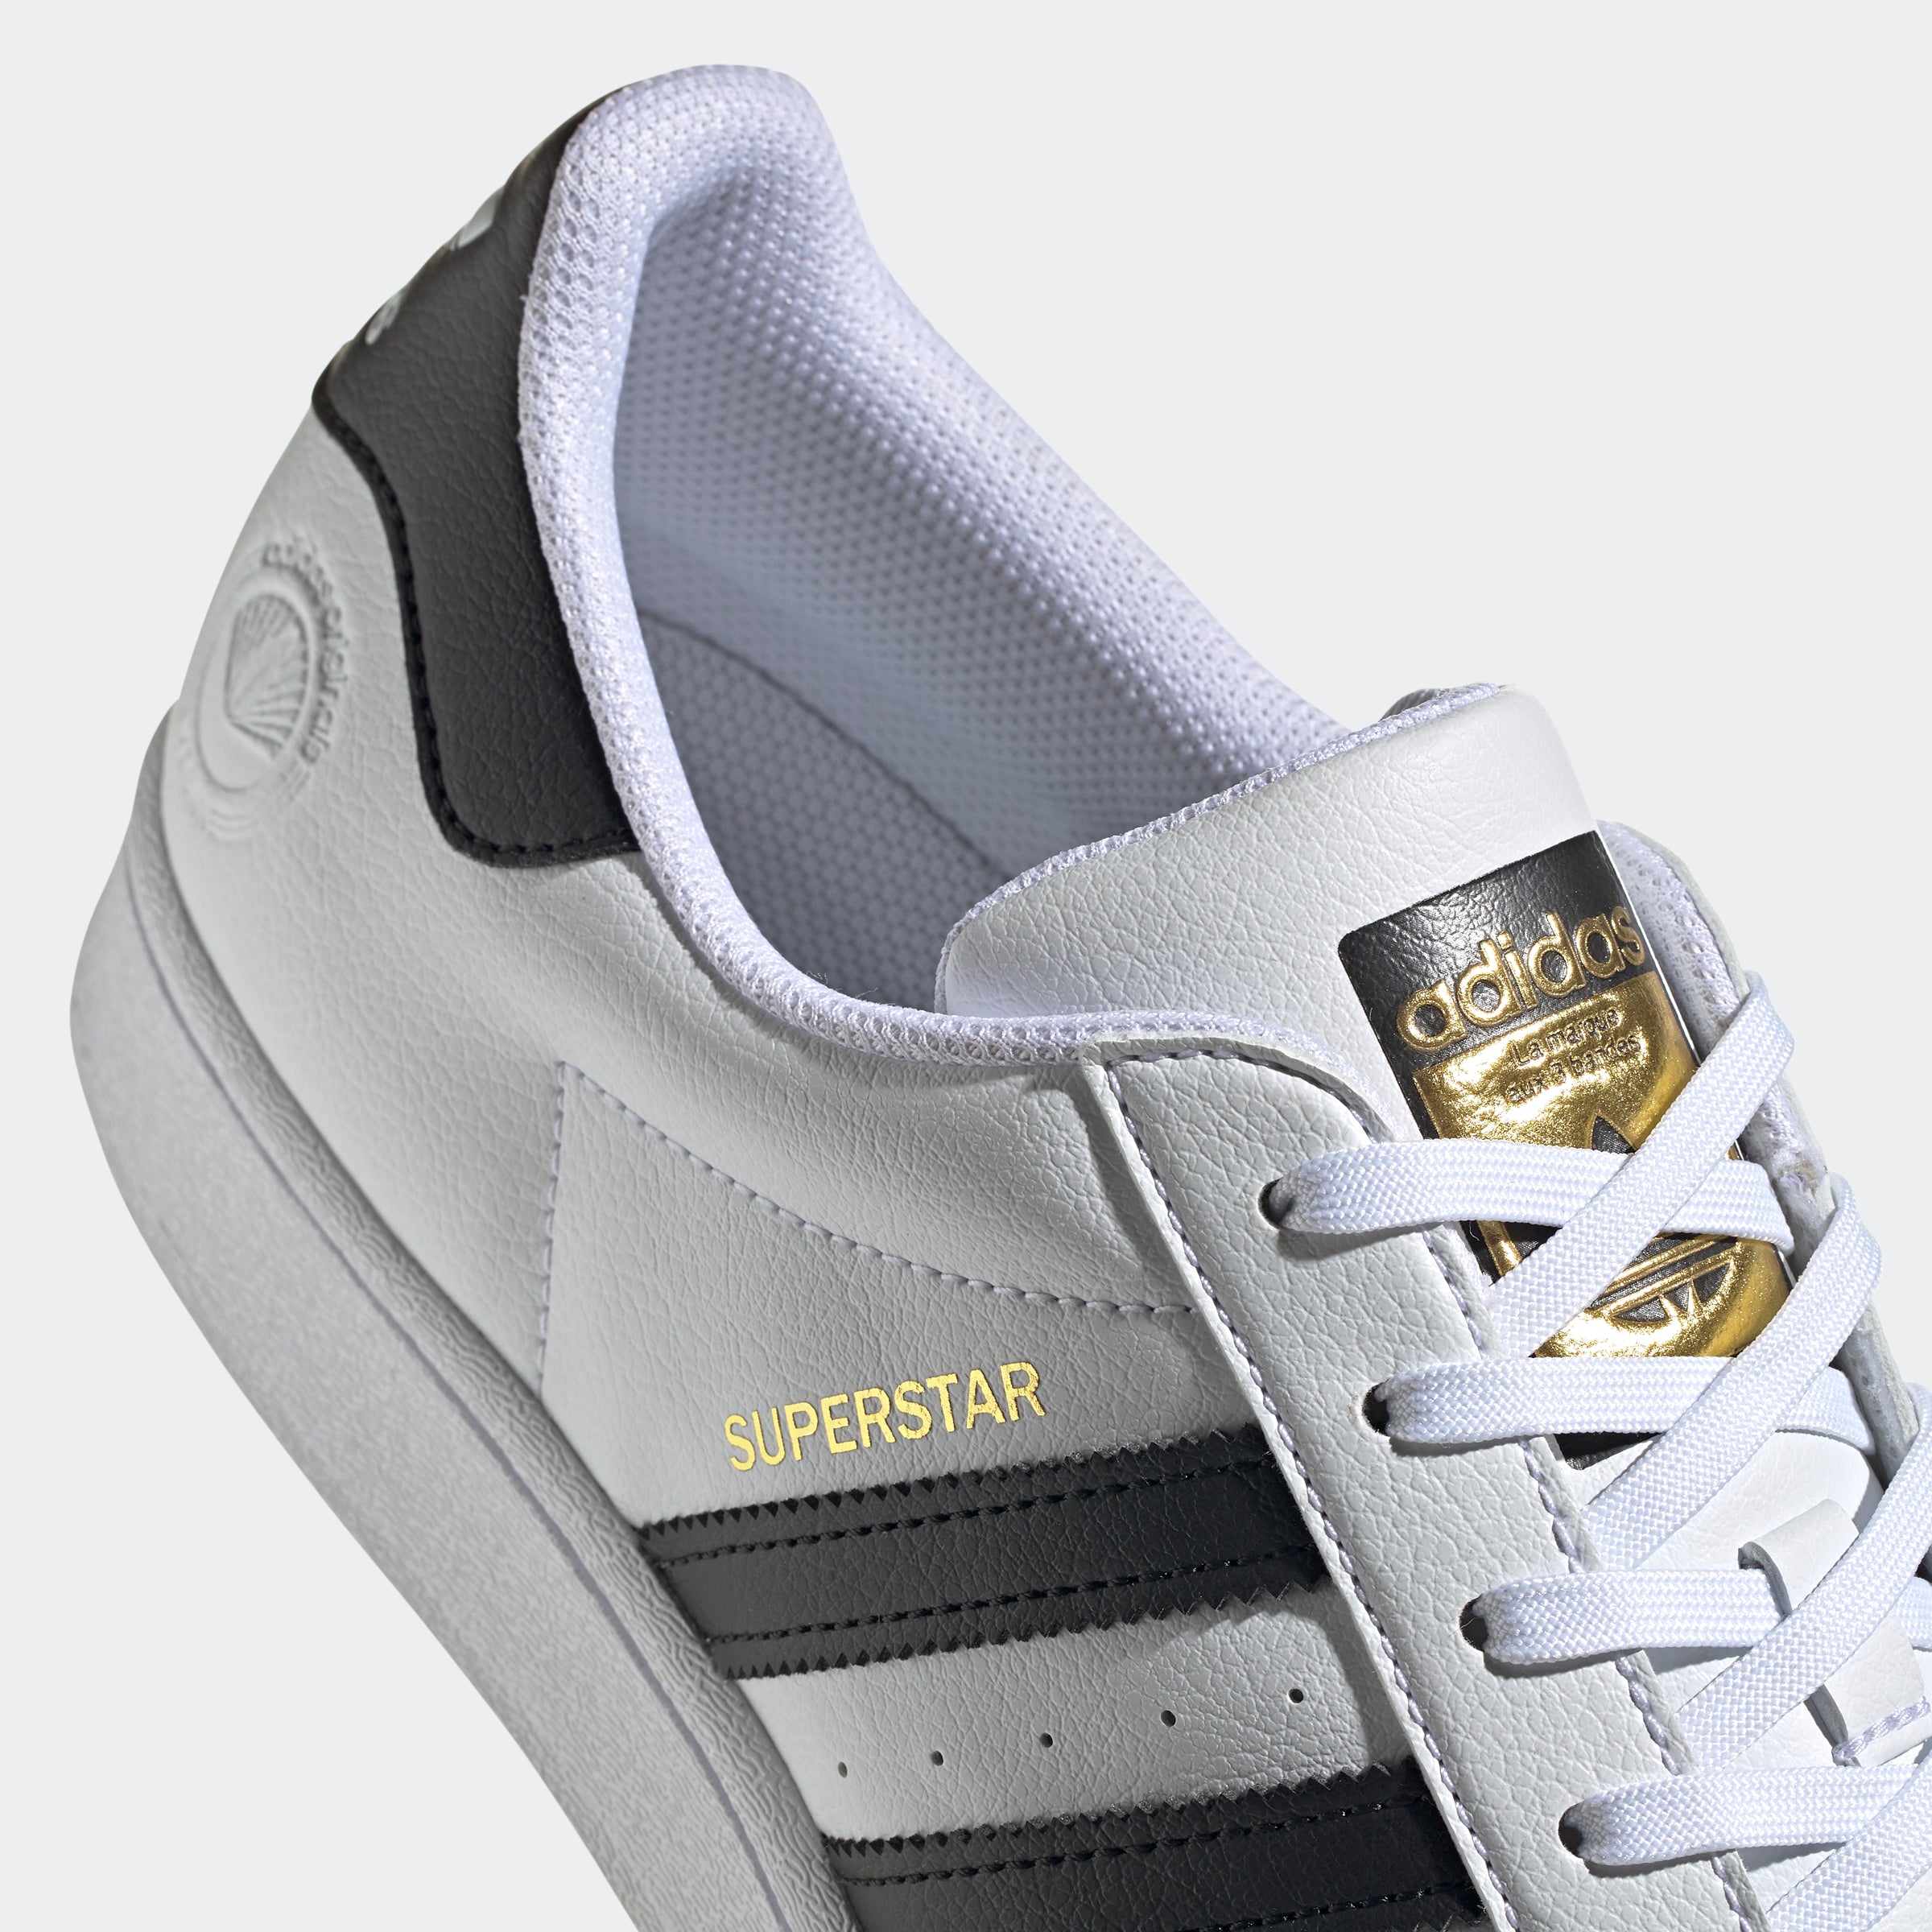 Adidas Superstar Vegan Core Black/Cloud White-Gold Metallic - FW2296